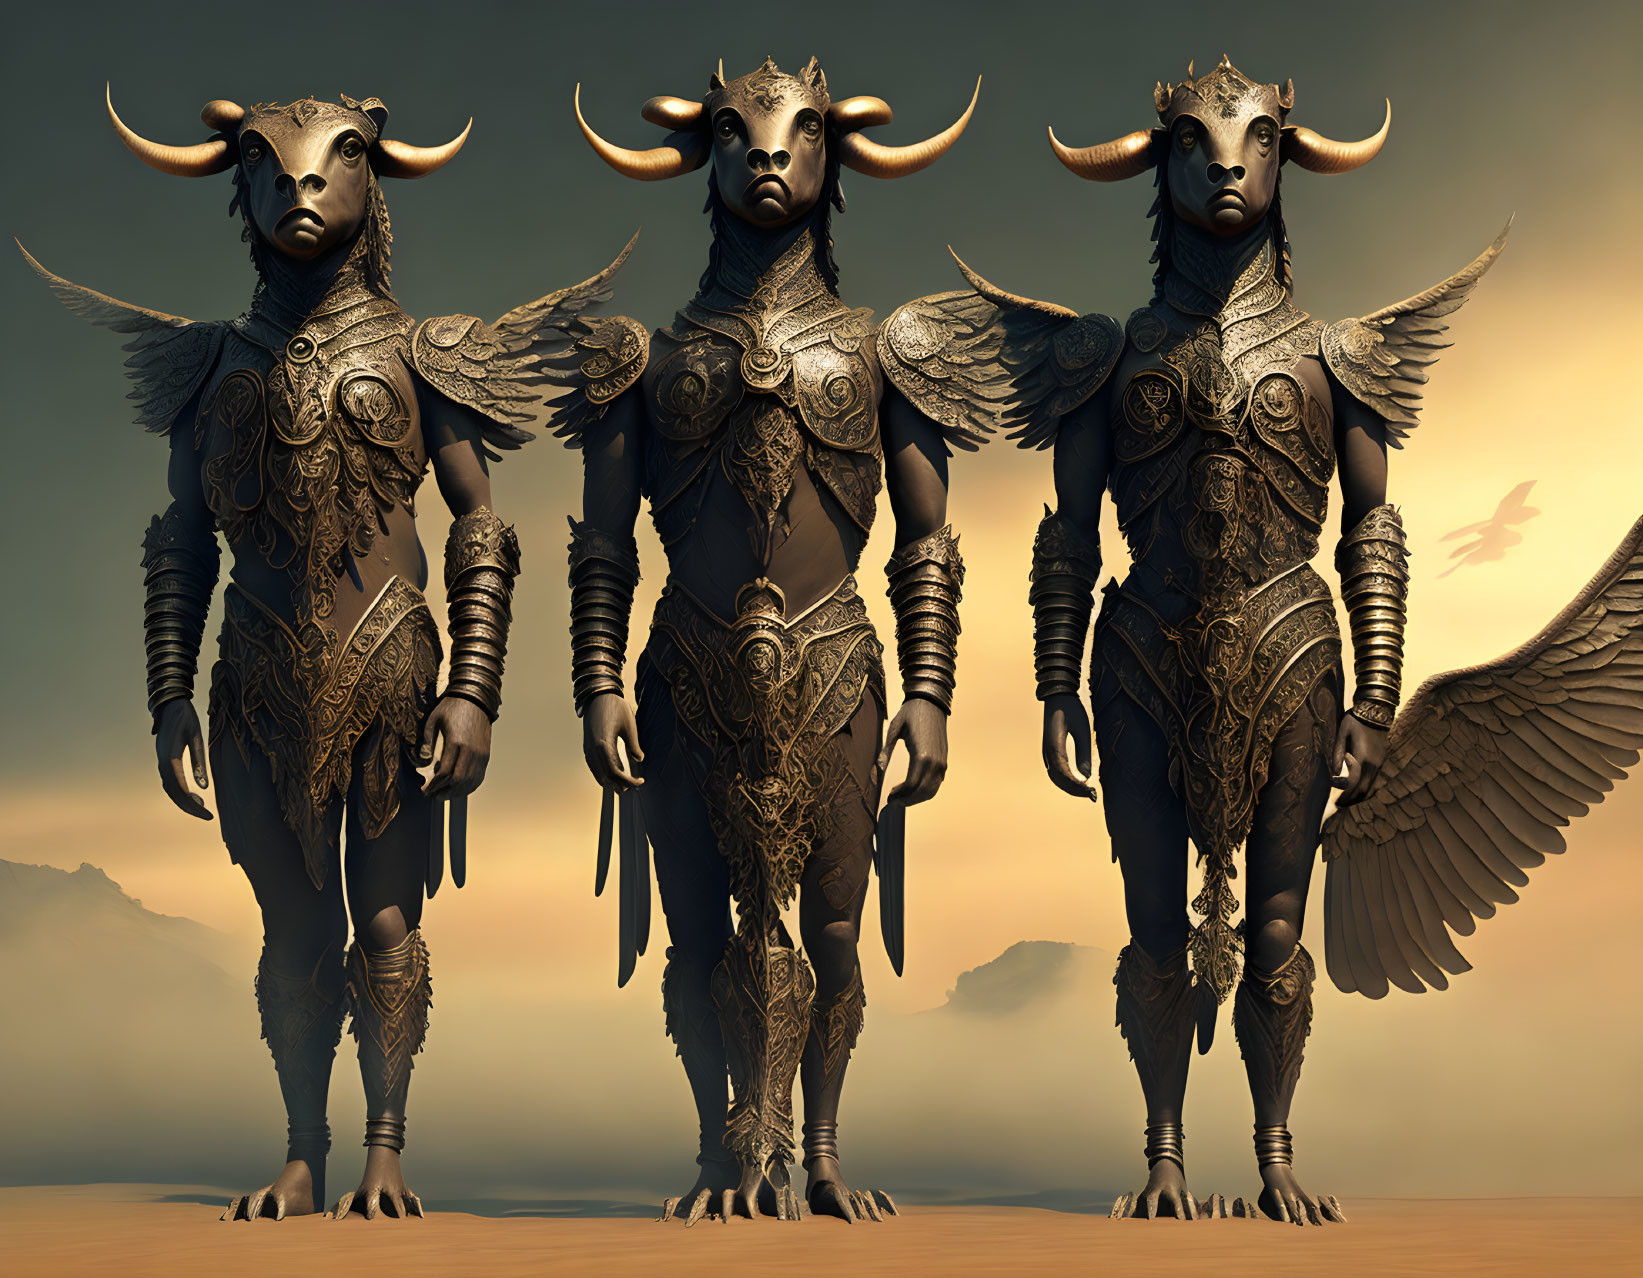 Bovine-headed humanoid figures in ornate armor in desert landscape